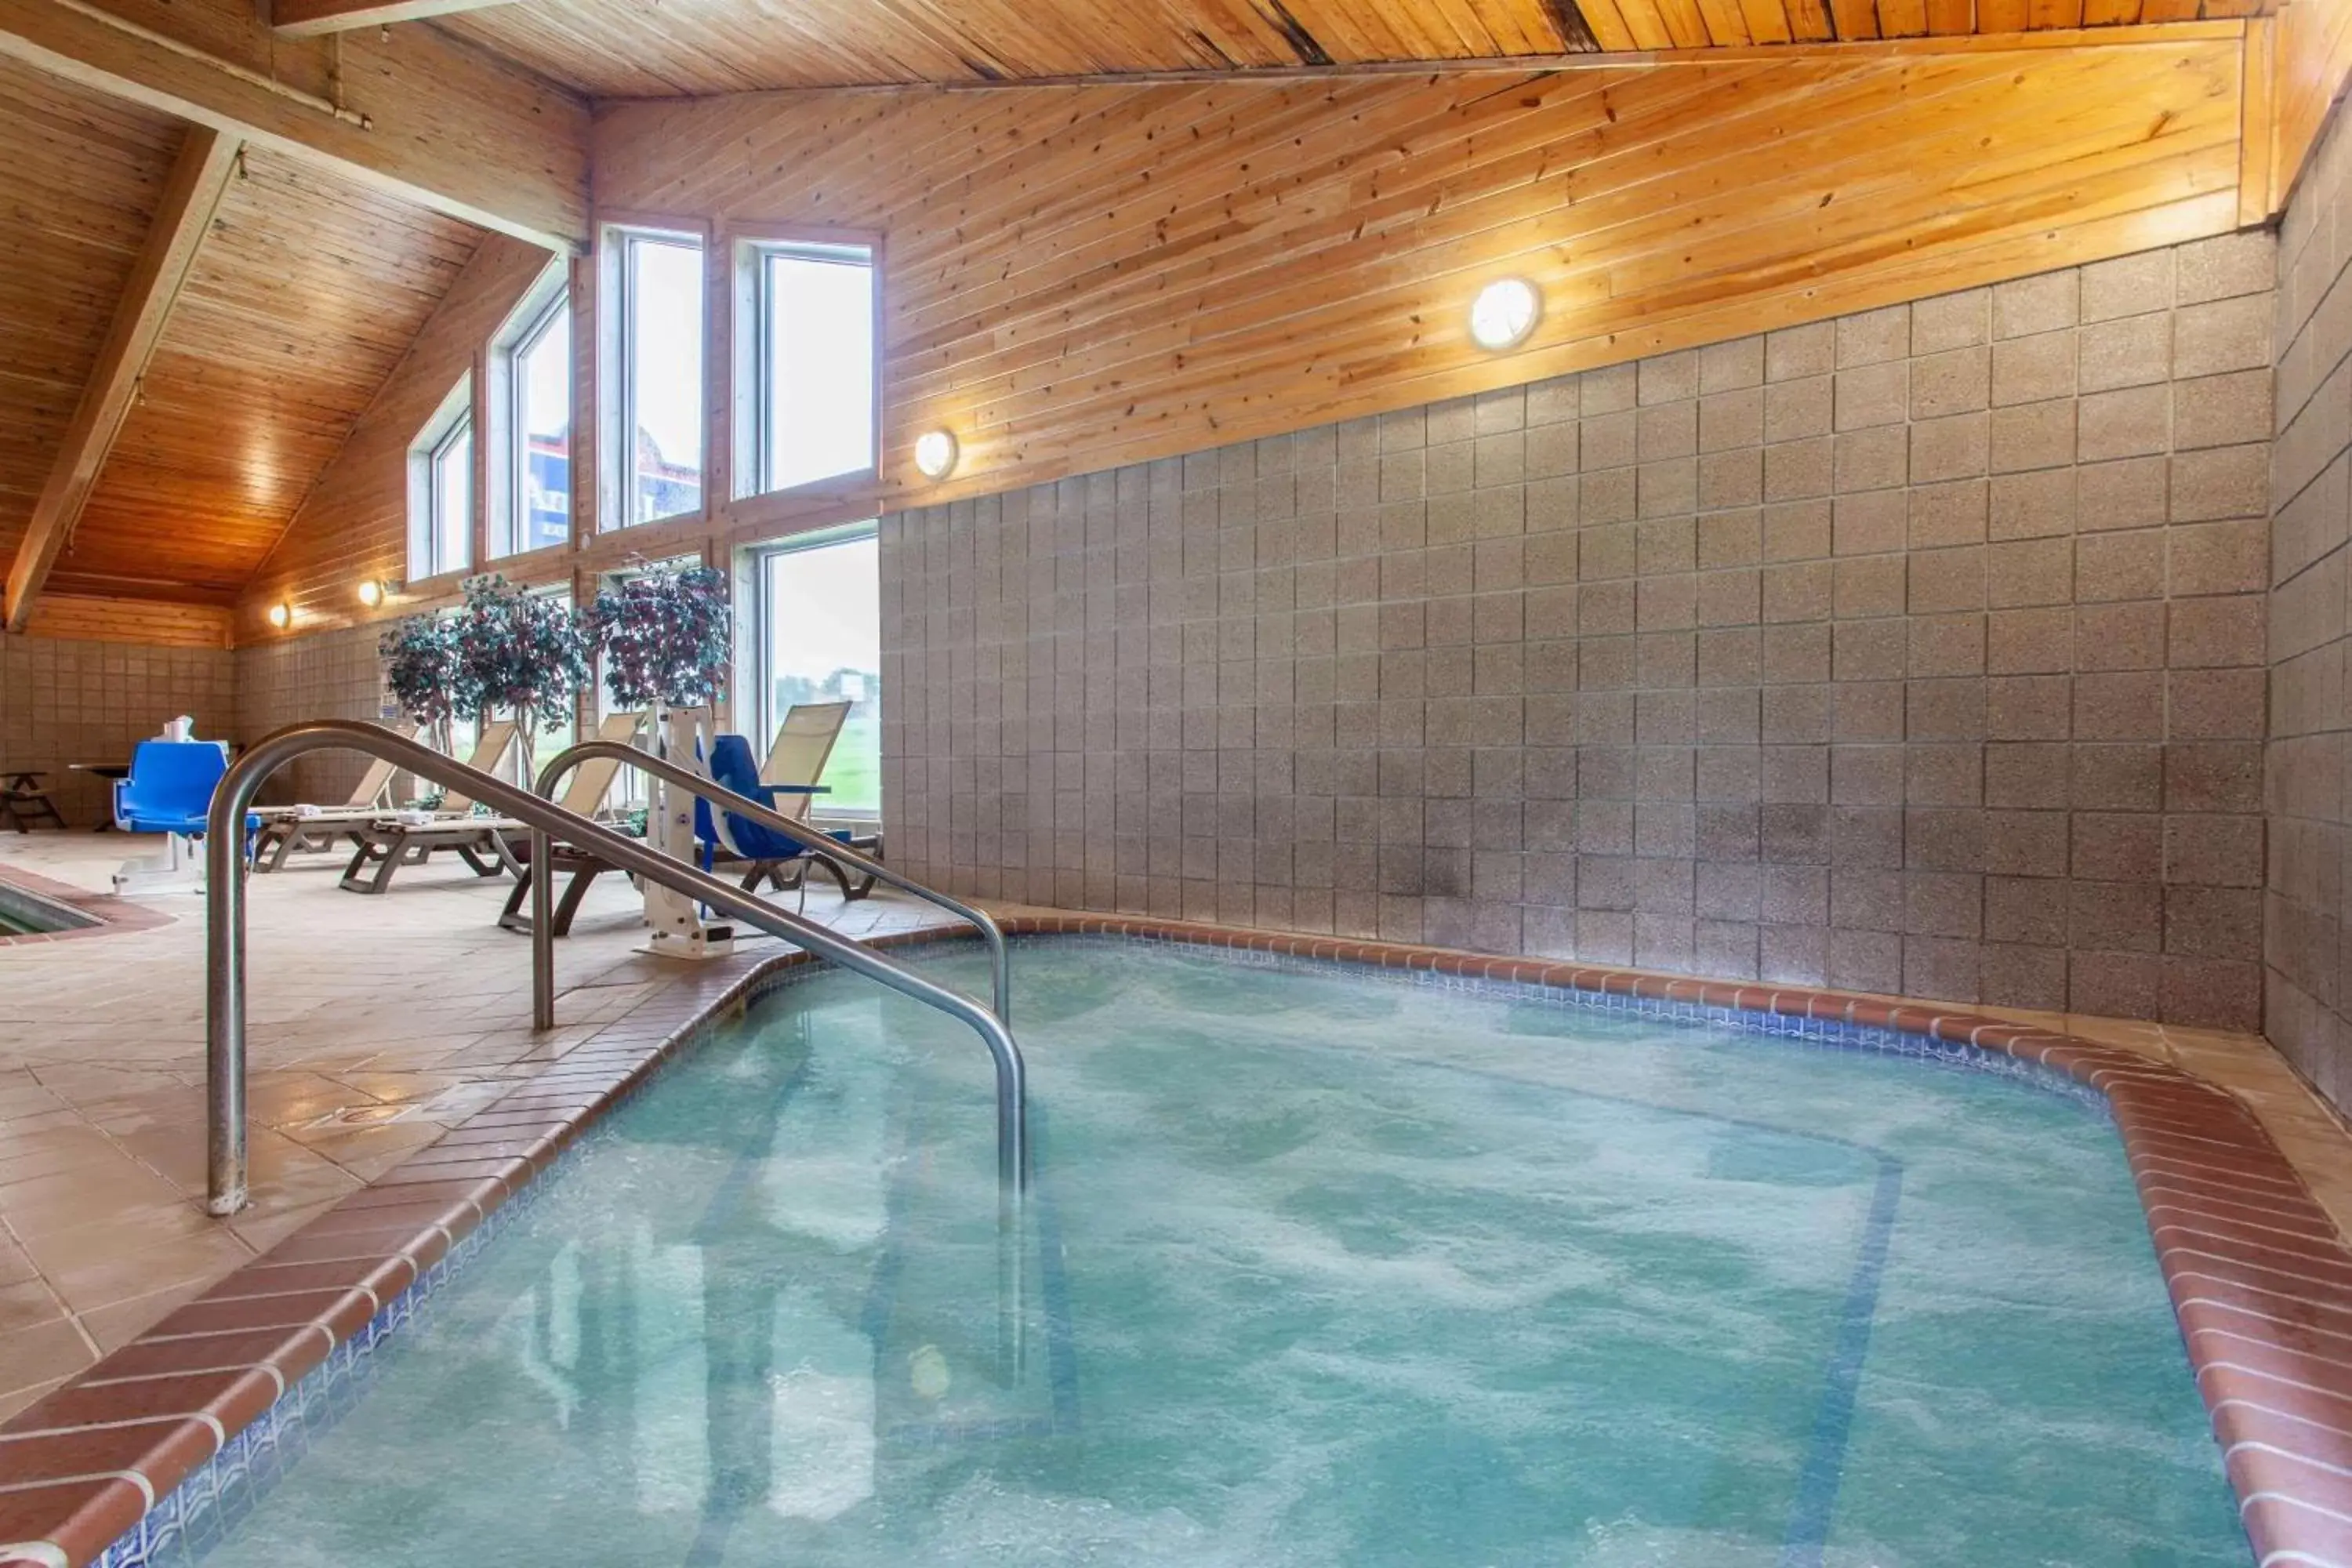 Hot Tub, Swimming Pool in AmericInn by Wyndham Northfield